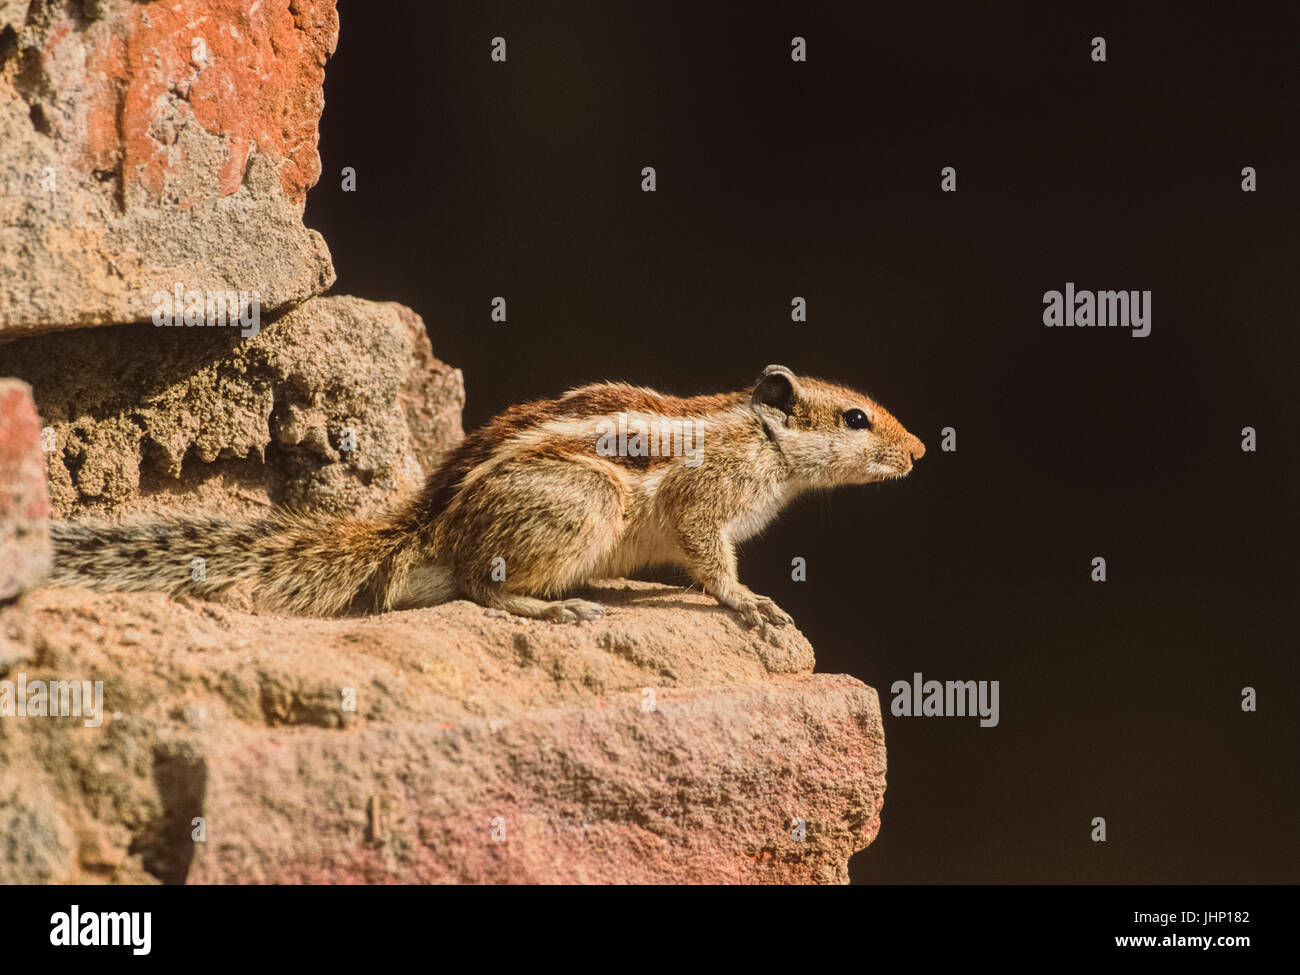 Northern Palm Eichhörnchen, (Funambulus pennantii), oder die 5-gestreiften Palm Eichhörnchen, sitzt auf Mauer, Keoladeo Ghana National Park, Rajasthan, Indien Stockfoto